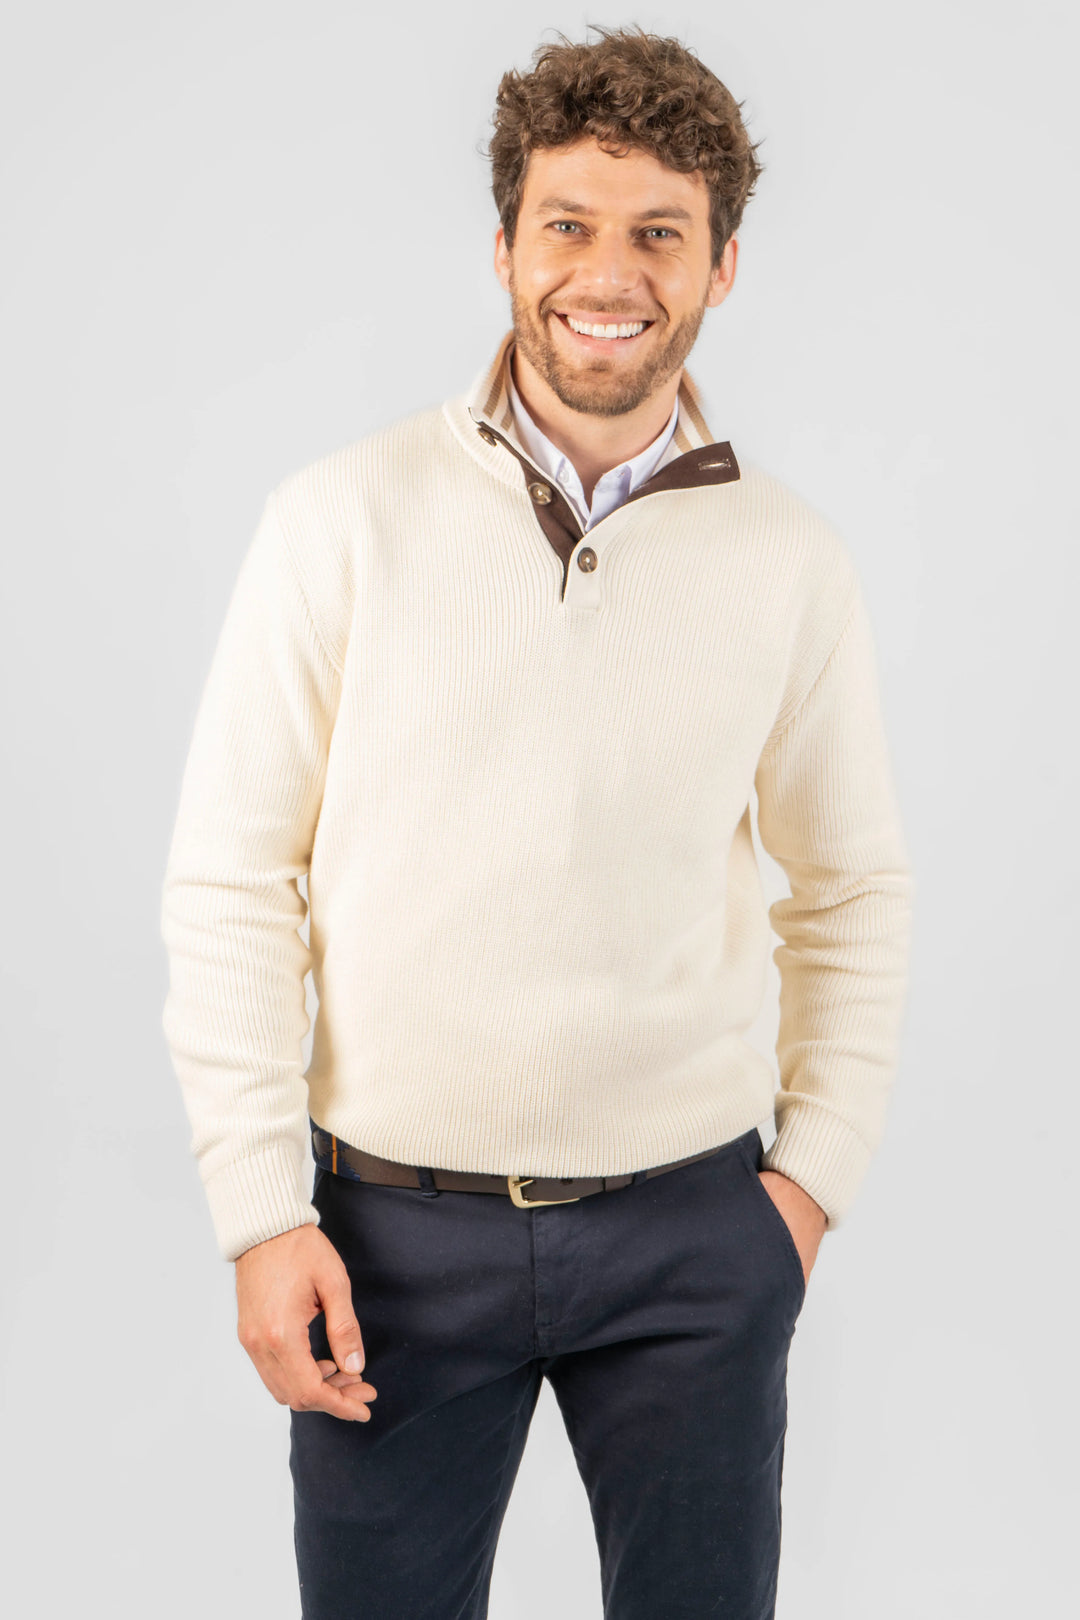 Suéter con cuello tipo half button y tejido acanalado de color beige con detalles en cuello y codos en café .